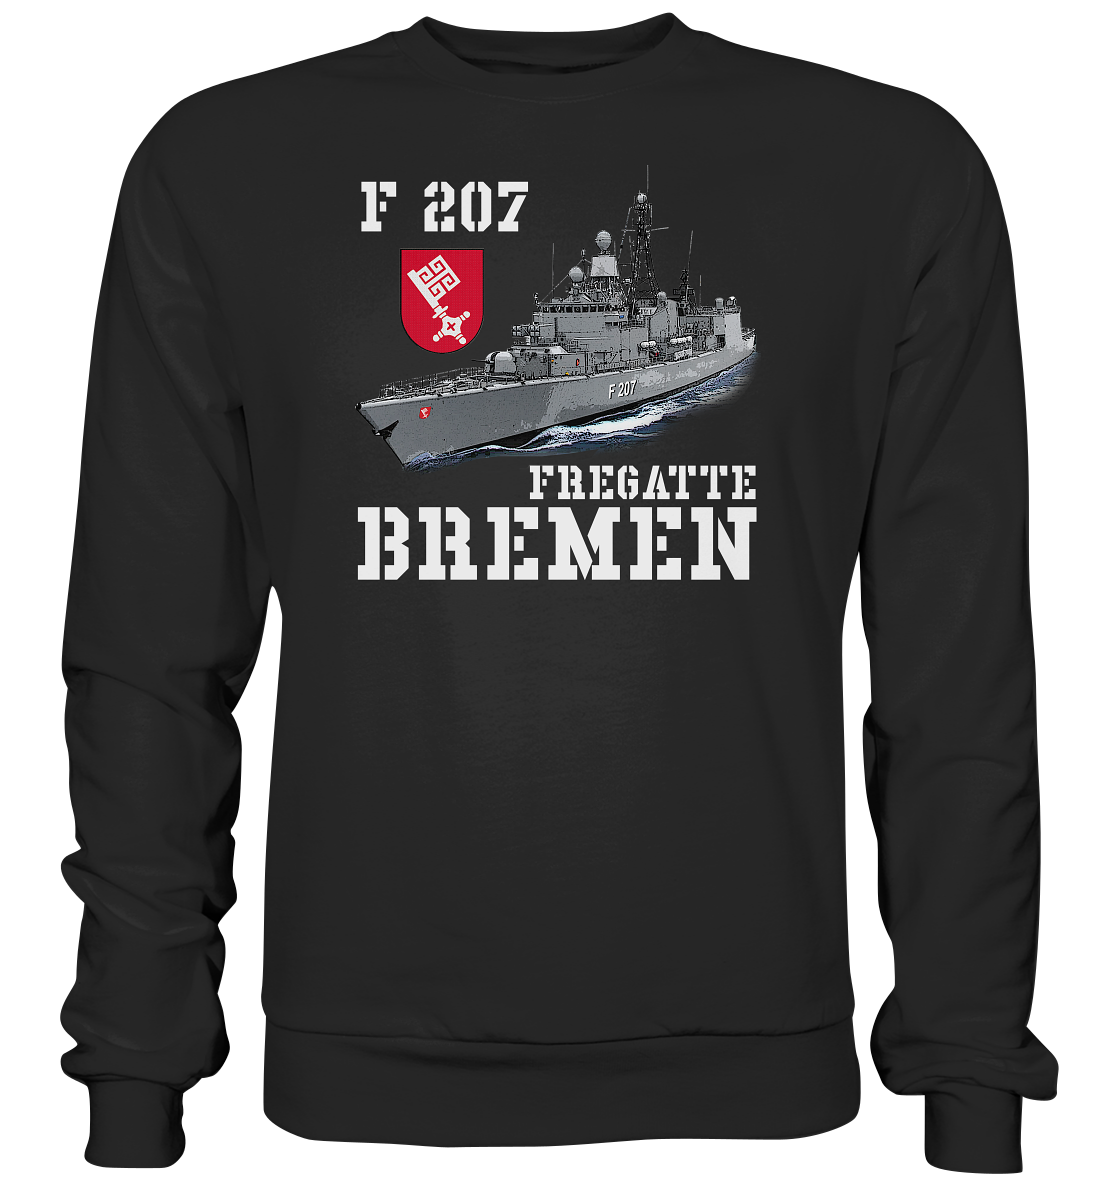 F207 Fregatte BREMEN - Premium Sweatshirt